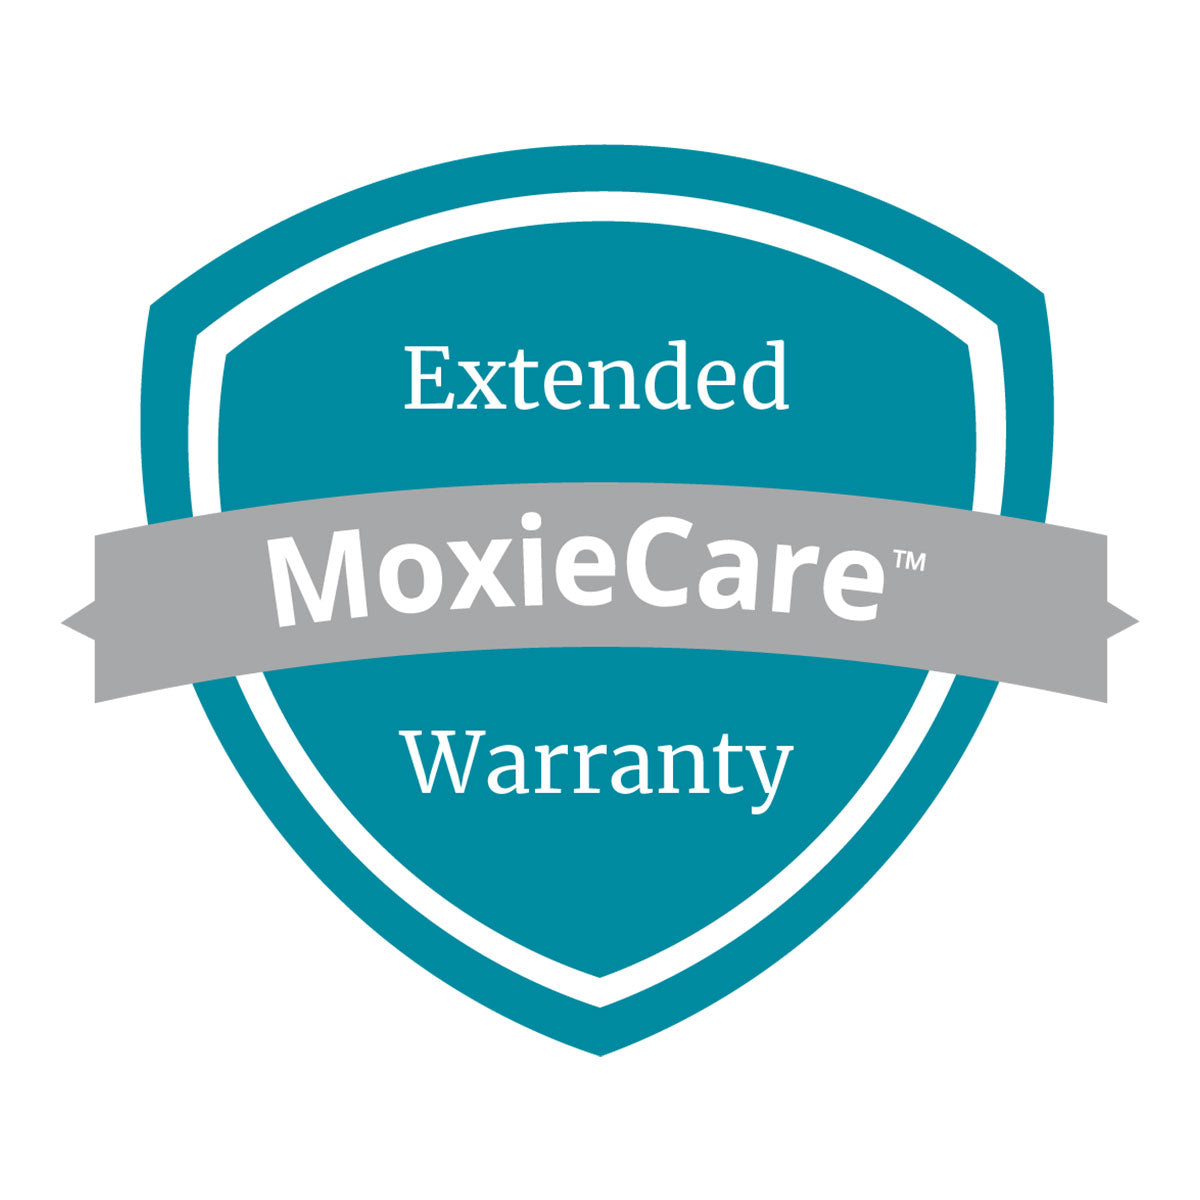 MoxieCare™ Extended Warranty